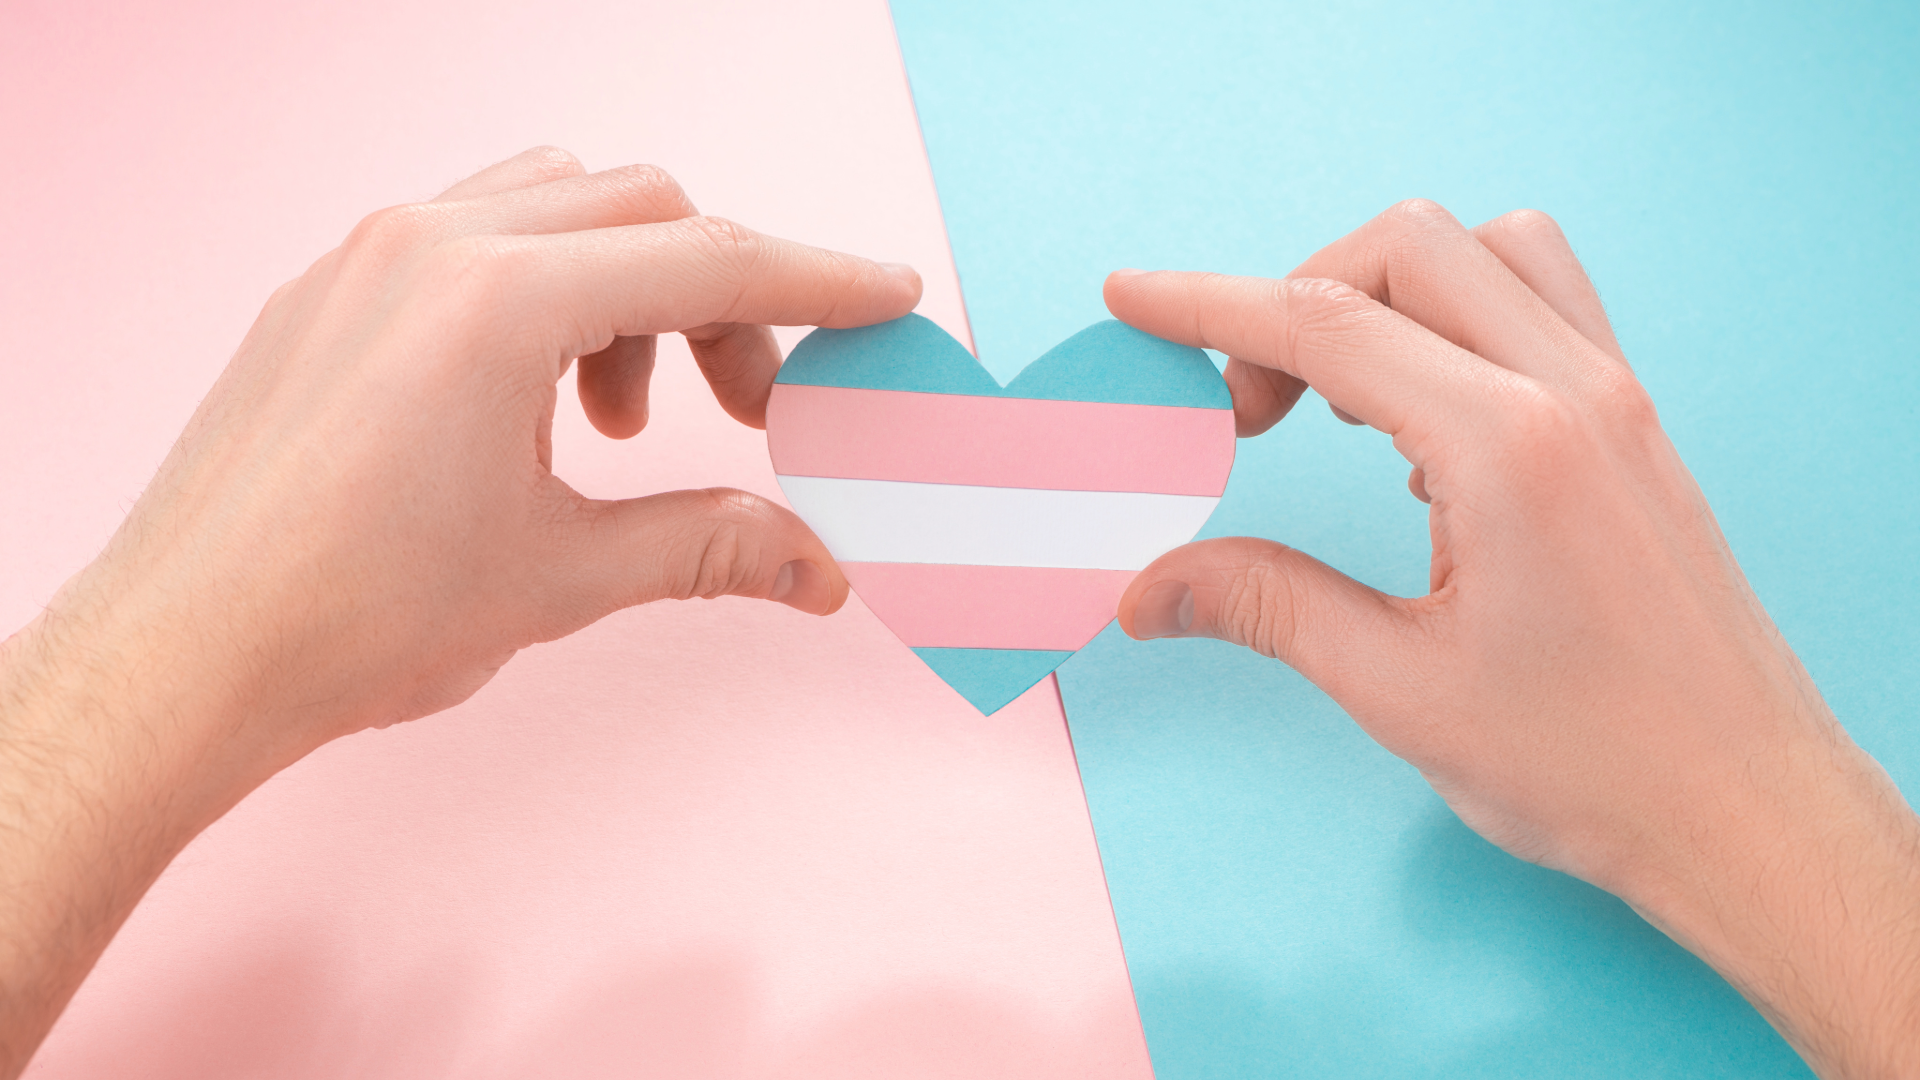 Deň viditeľnosti transrodových ľudí